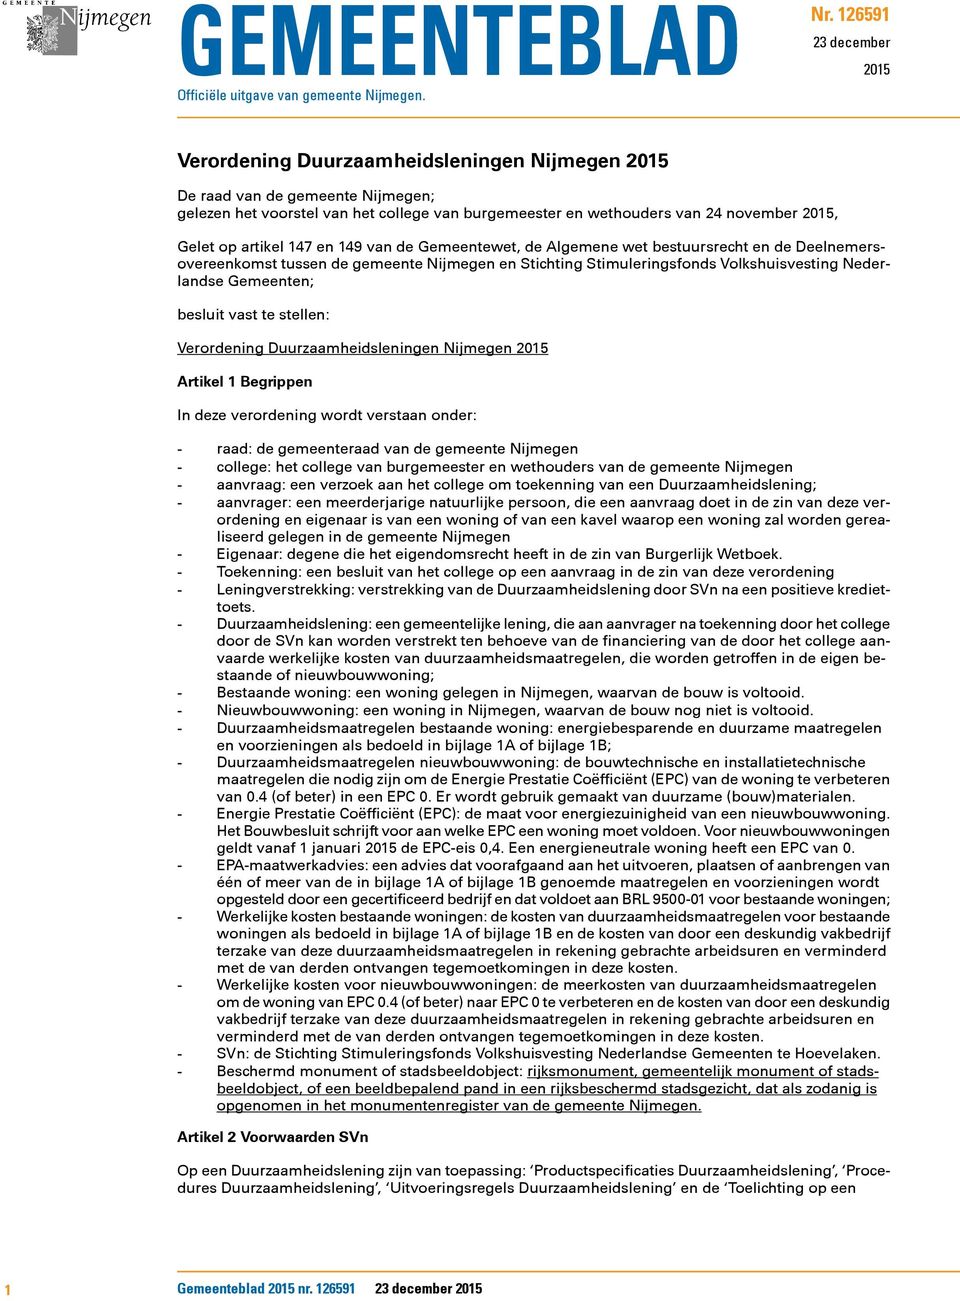 Gelet op artikel 147 en 149 van de Gemeentewet, de Algemene wet bestuursrecht en de Deelnemersovereenkomst tussen de gemeente Nijmegen en Stichting Stimuleringsfonds Volkshuisvesting Nederlandse